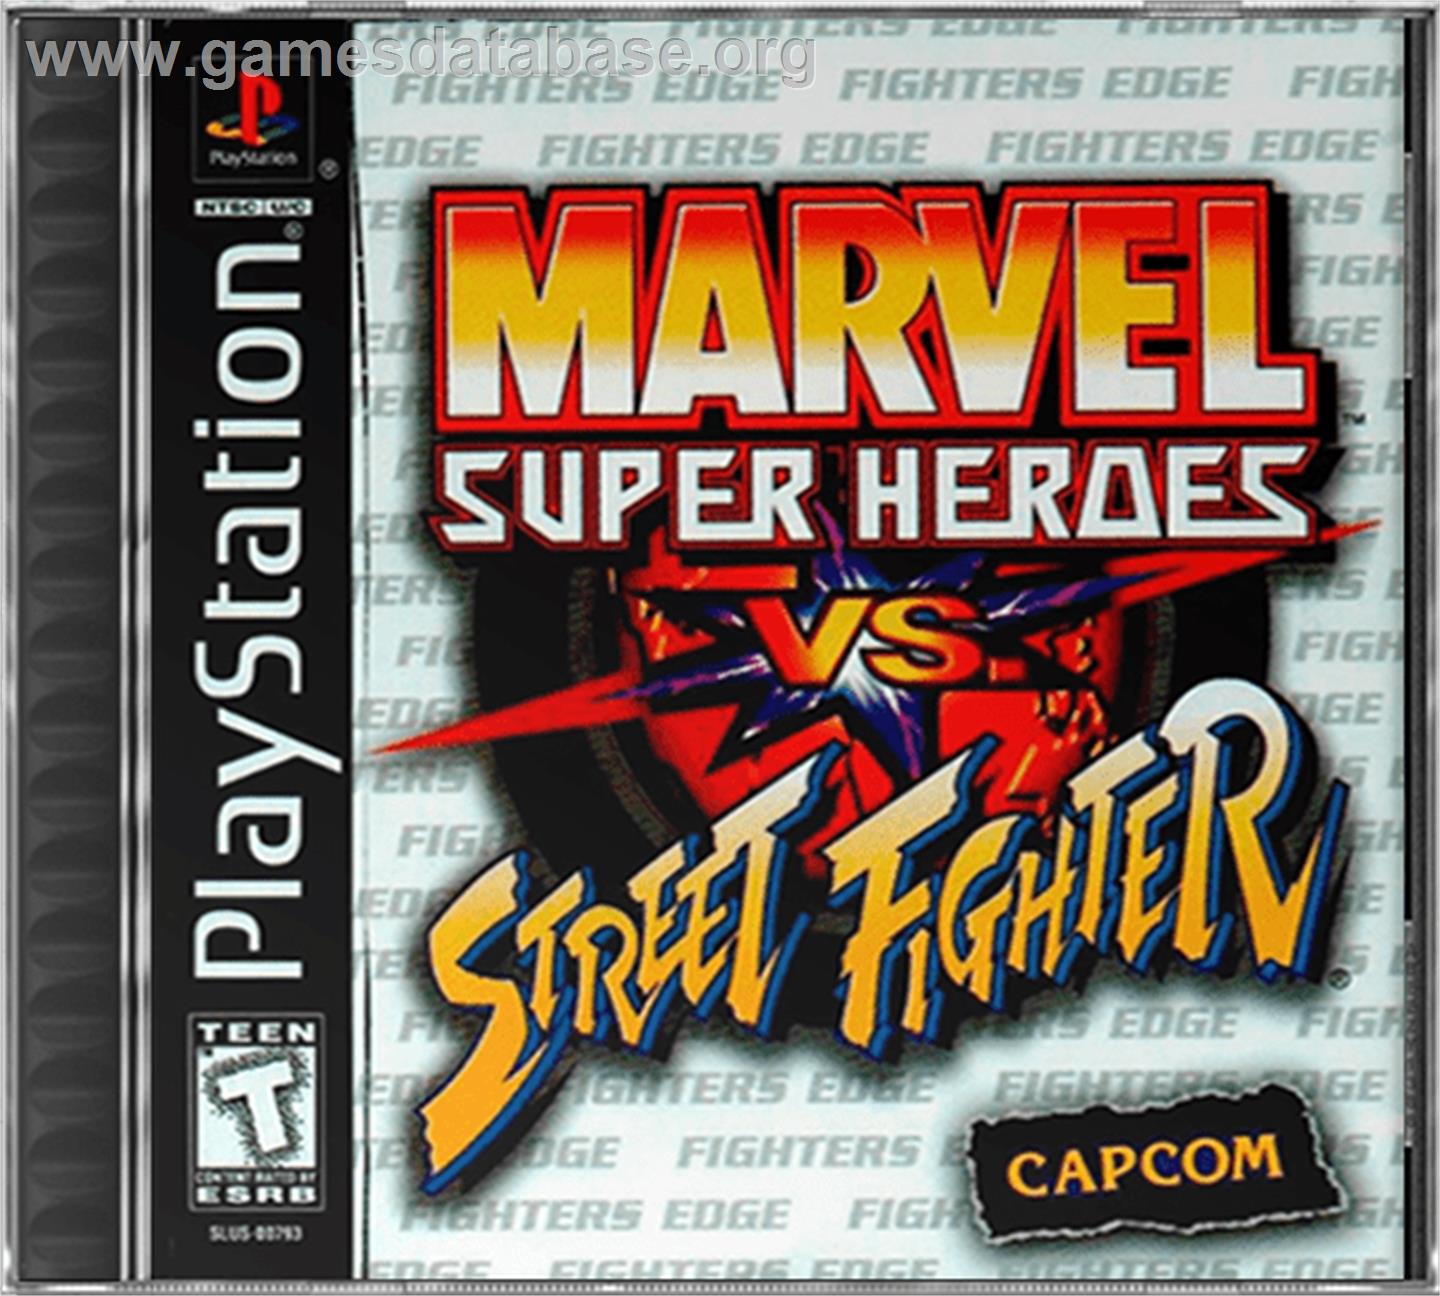 Marvel Super Heroes Vs. Street Fighter - Sony Playstation - Artwork - Box